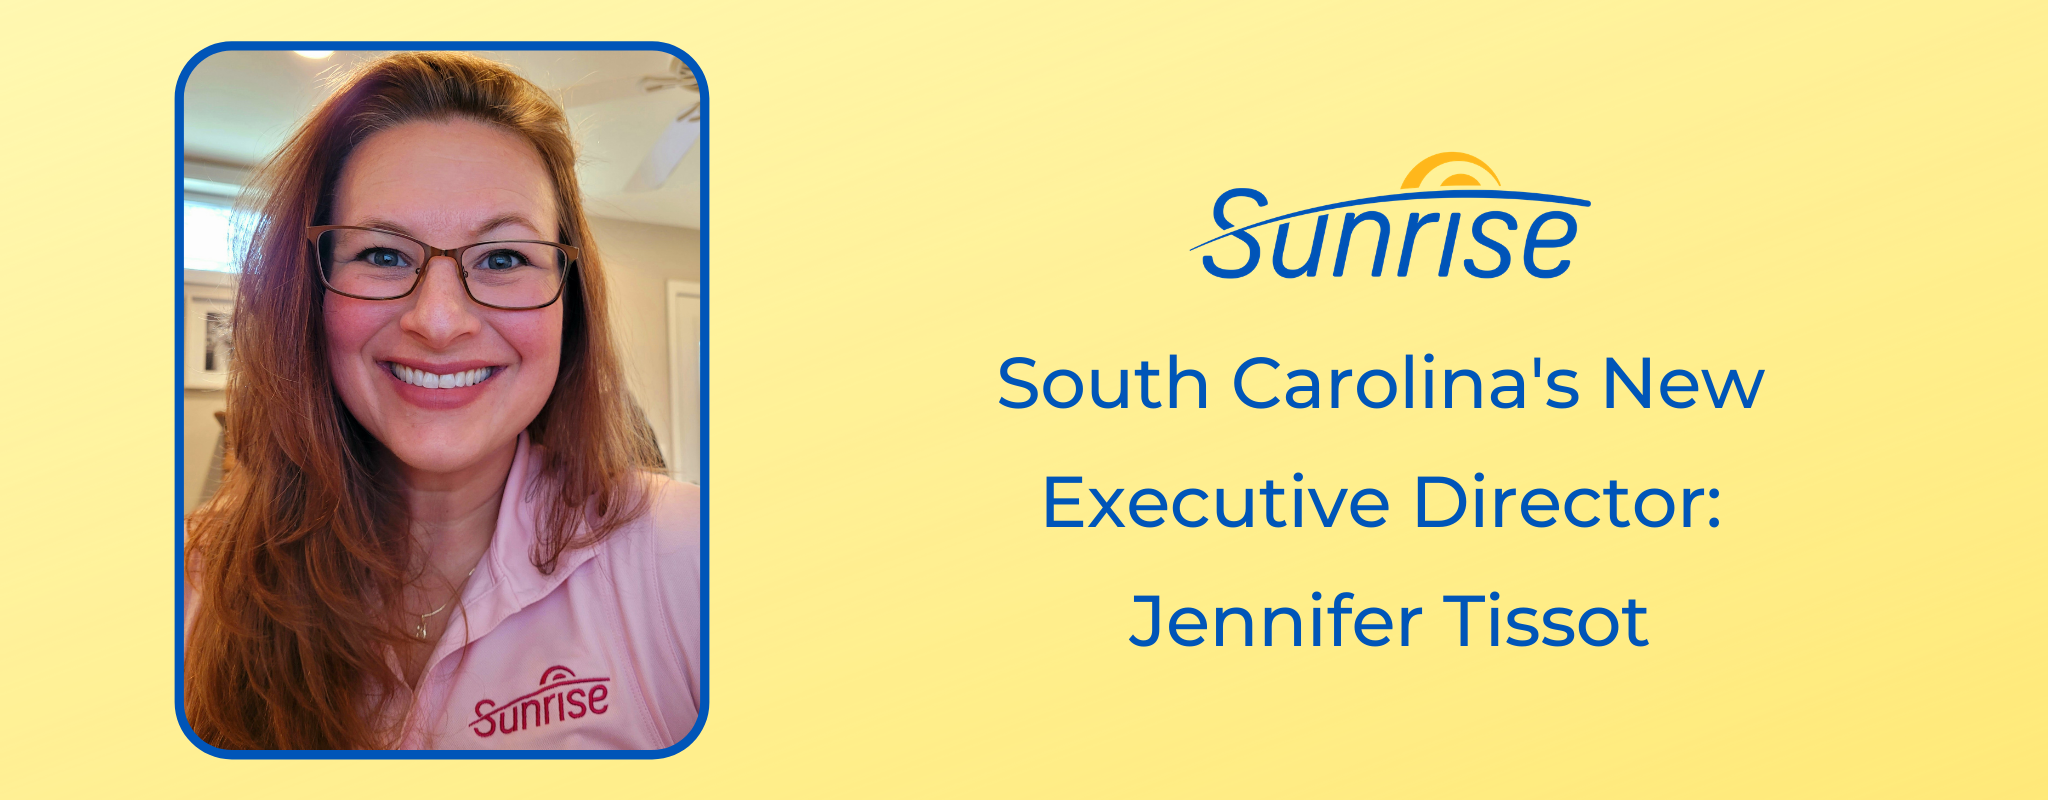 Новый исполнительный директор Южной Каролины: Дженнифер Тиссо